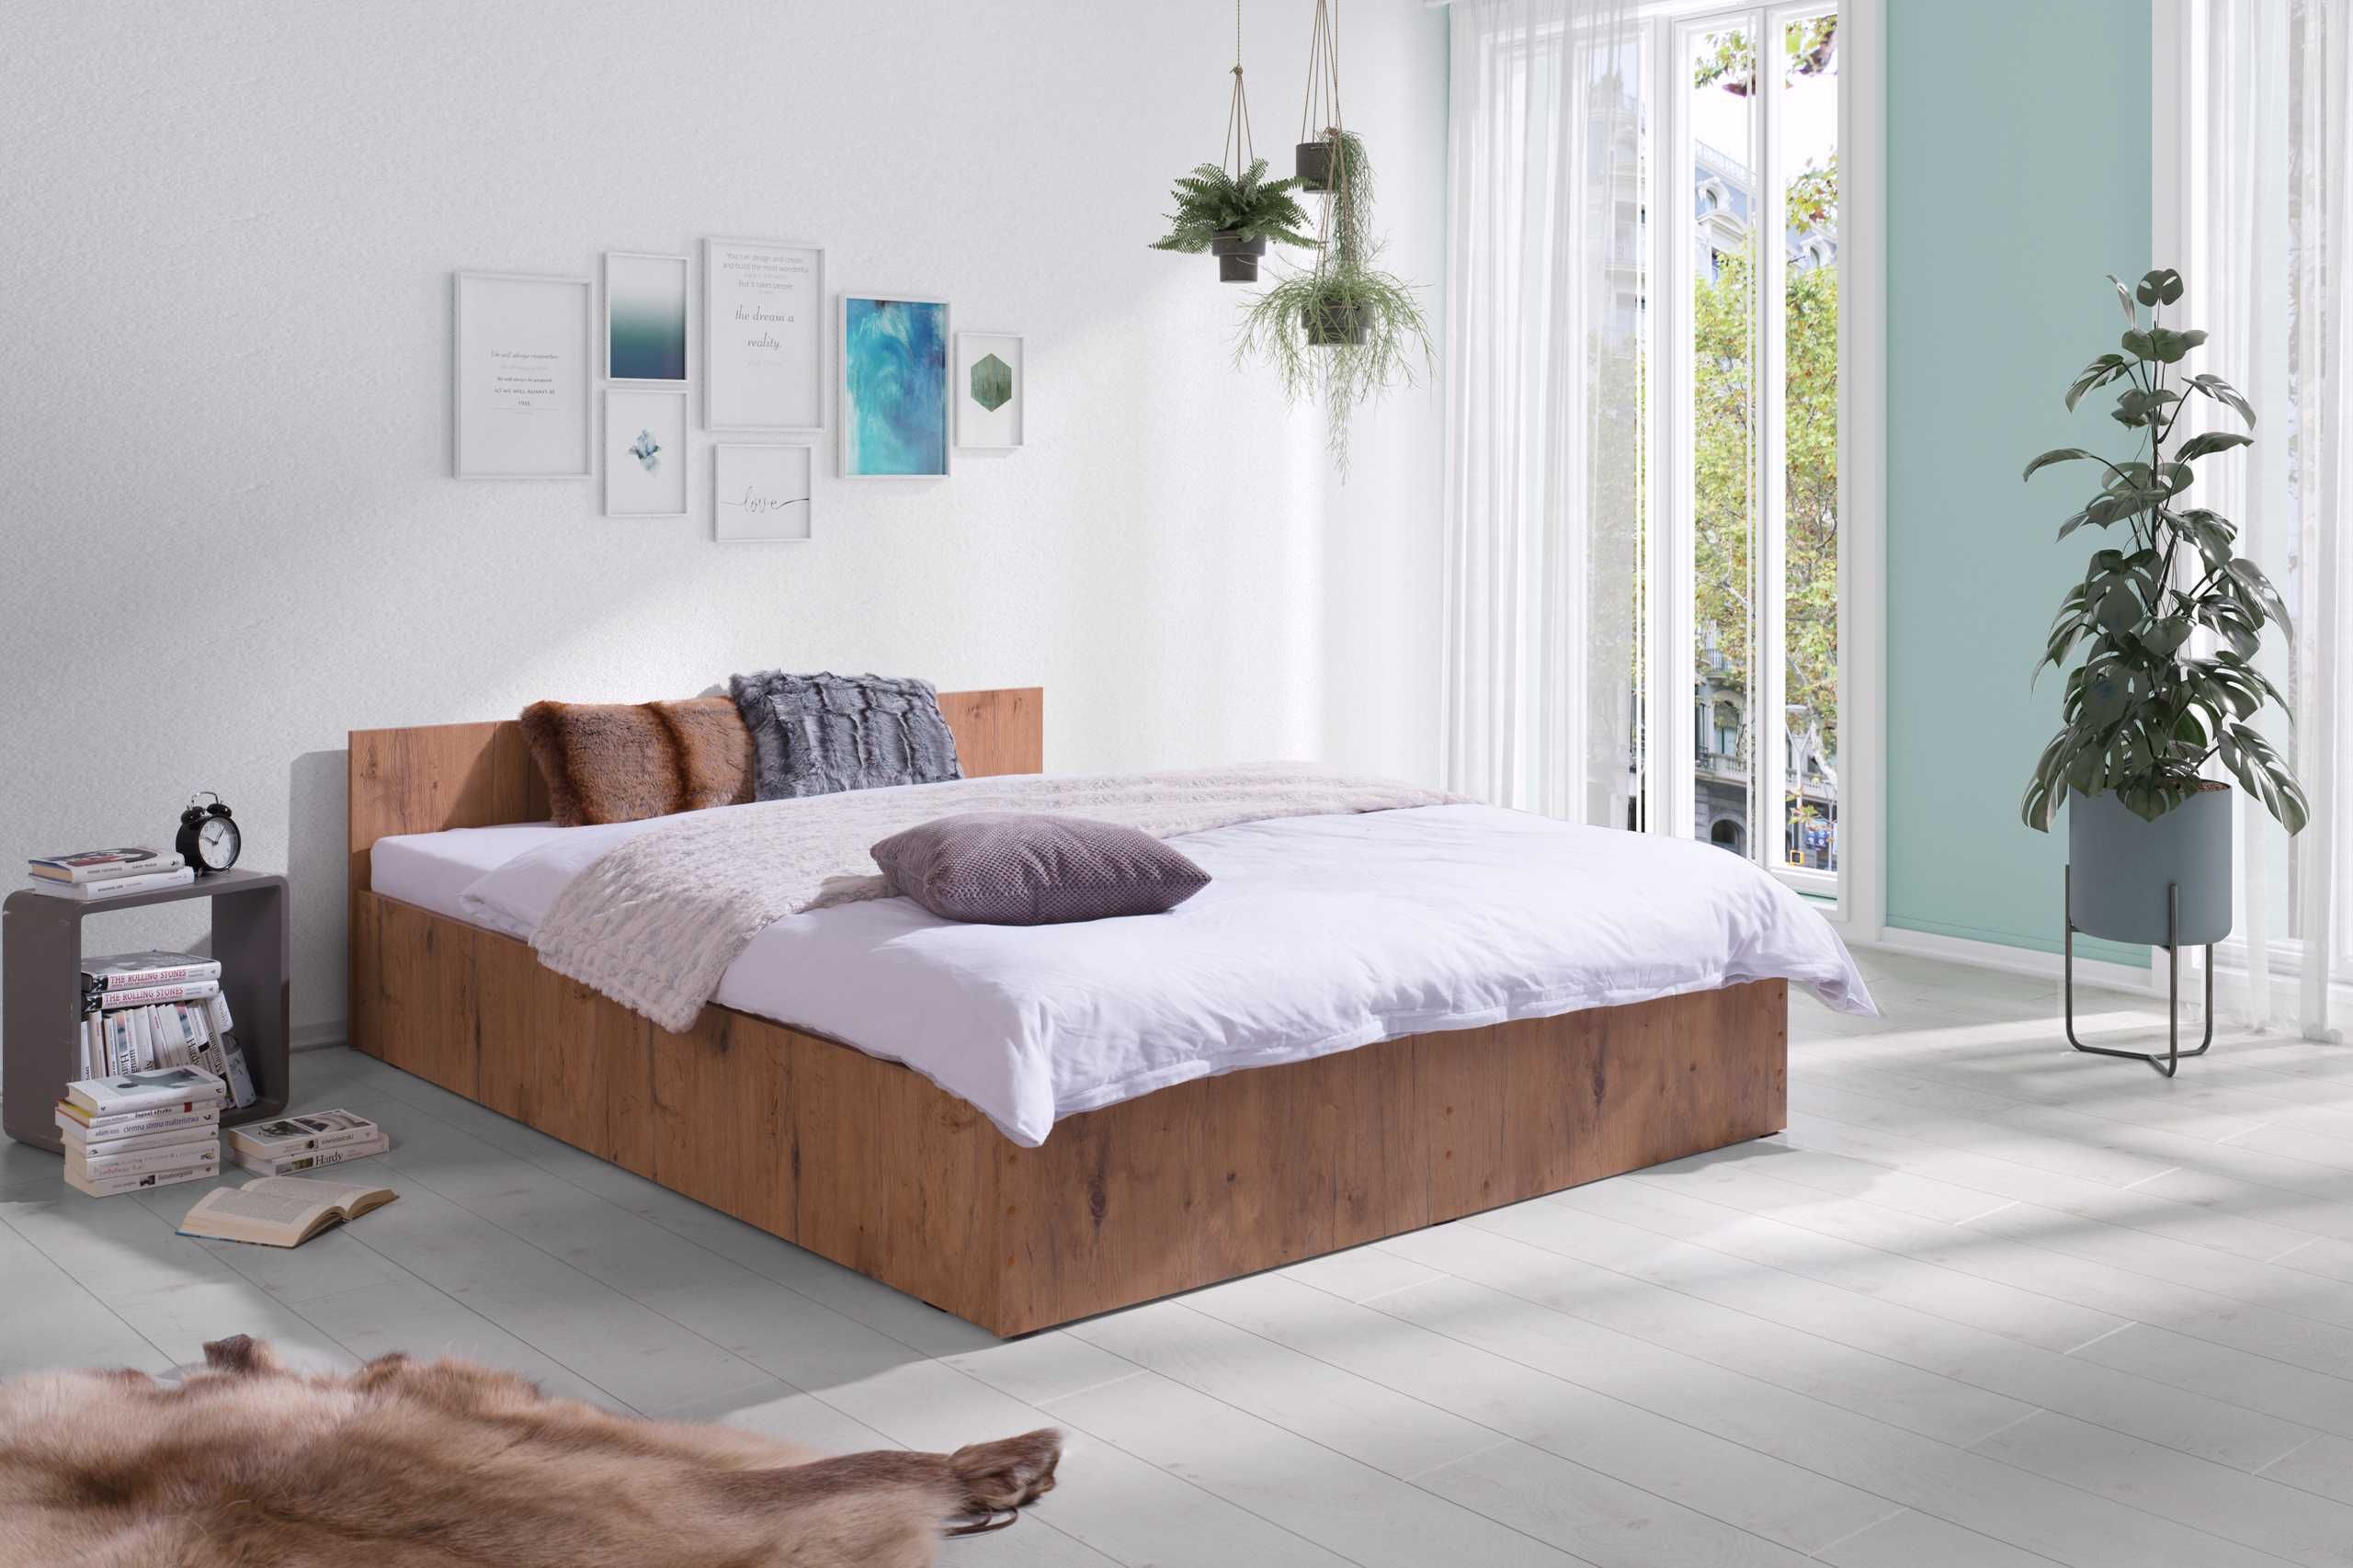 Łóżko podwójne + Gruby materac piankowy 160x200 Nowe od Producenta